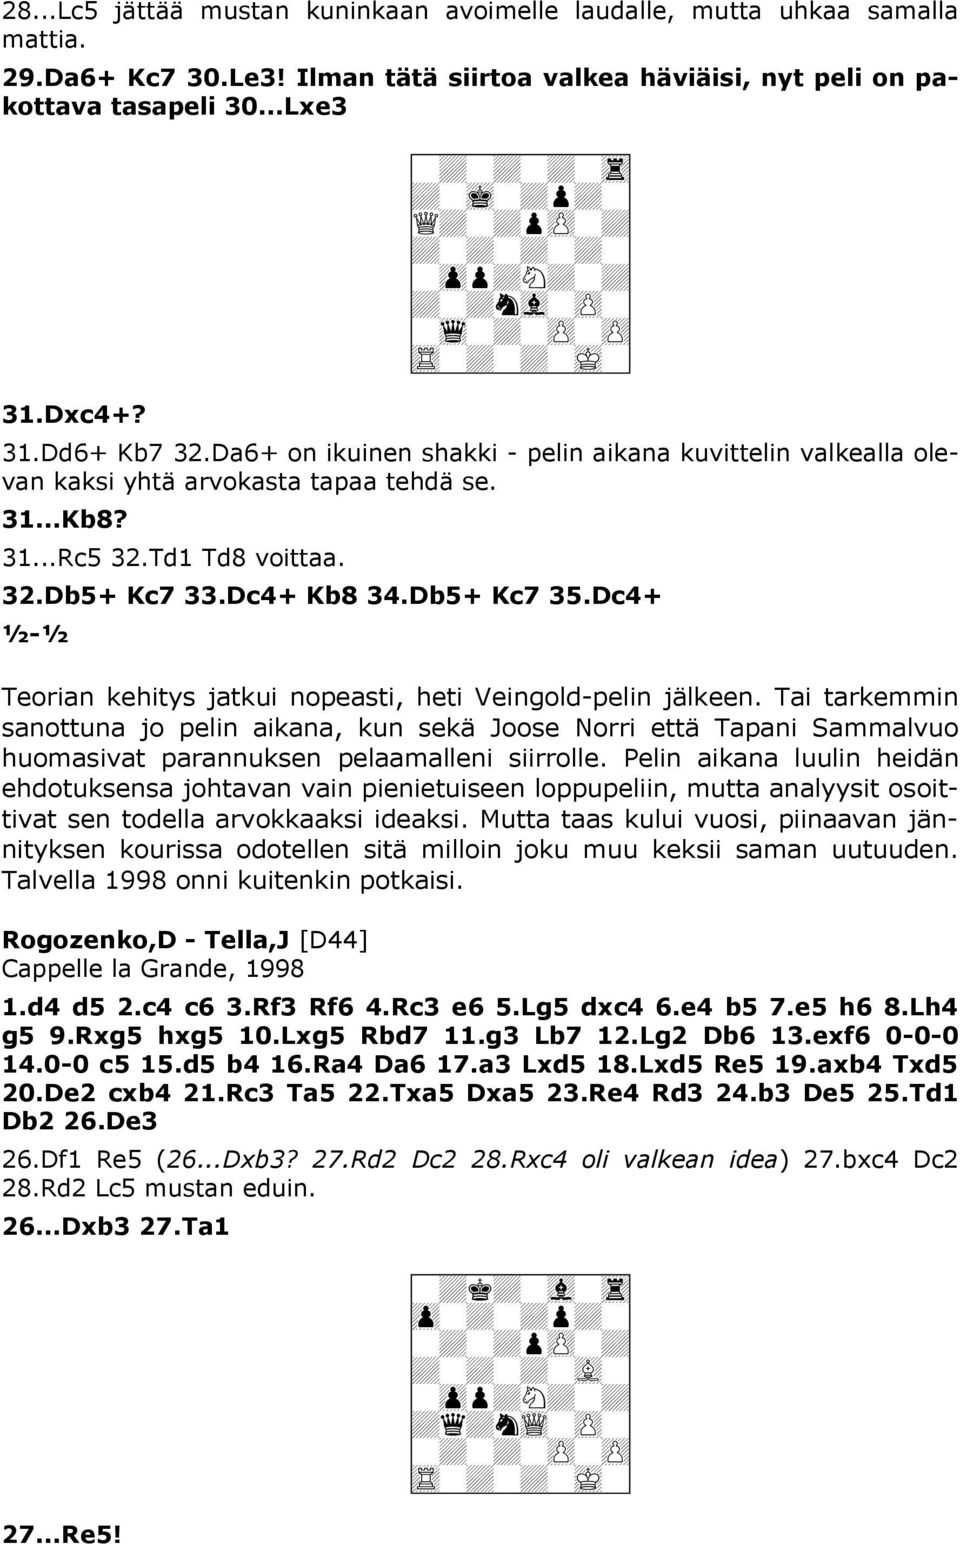 Da6+ on ikuinen shakki - pelin aikana kuvittelin valkealla olevan kaksi yhtä arvokasta tapaa tehdä se. 31...Kb8? 31...Rc5 32.Td1 Td8 voittaa. 32.Db5+ Kc7 33.Dc4+ Kb8 34.Db5+ Kc7 35.